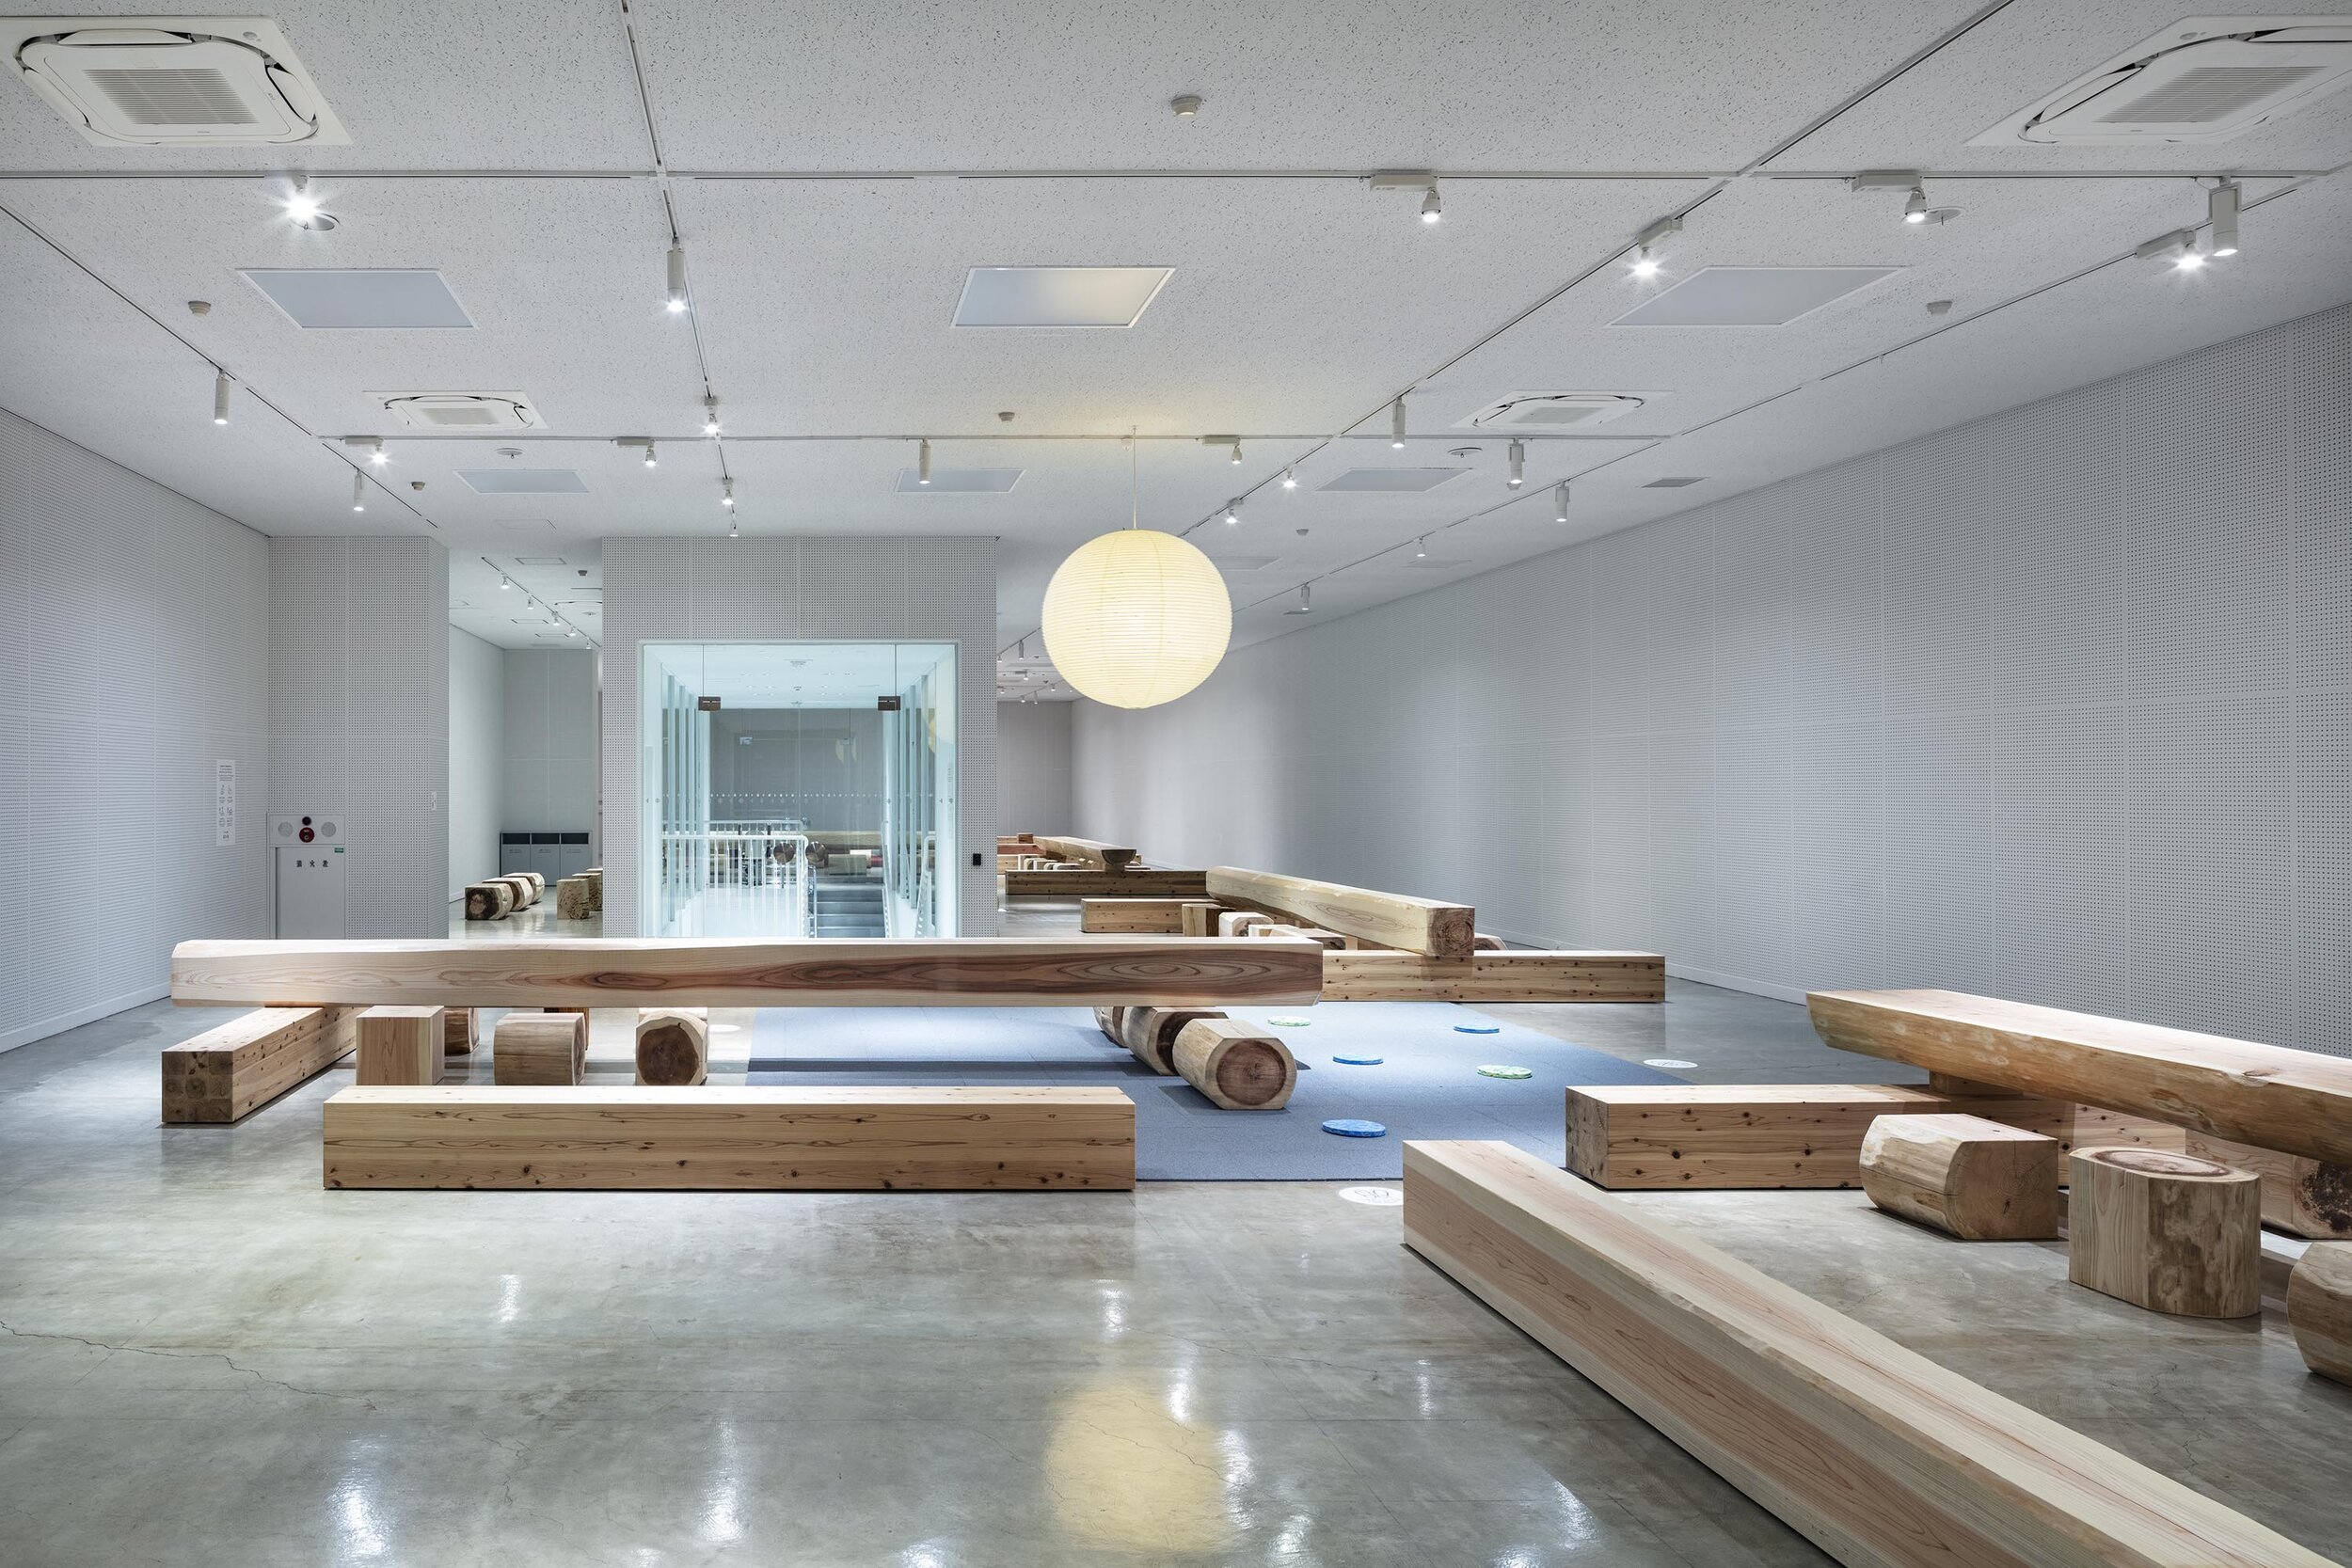  トラフ建築設計事務所 Torafu Architectsの鈴野浩一と禿真哉がインテリアデザインを手掛けた「丸太広場キトキ」の全景 